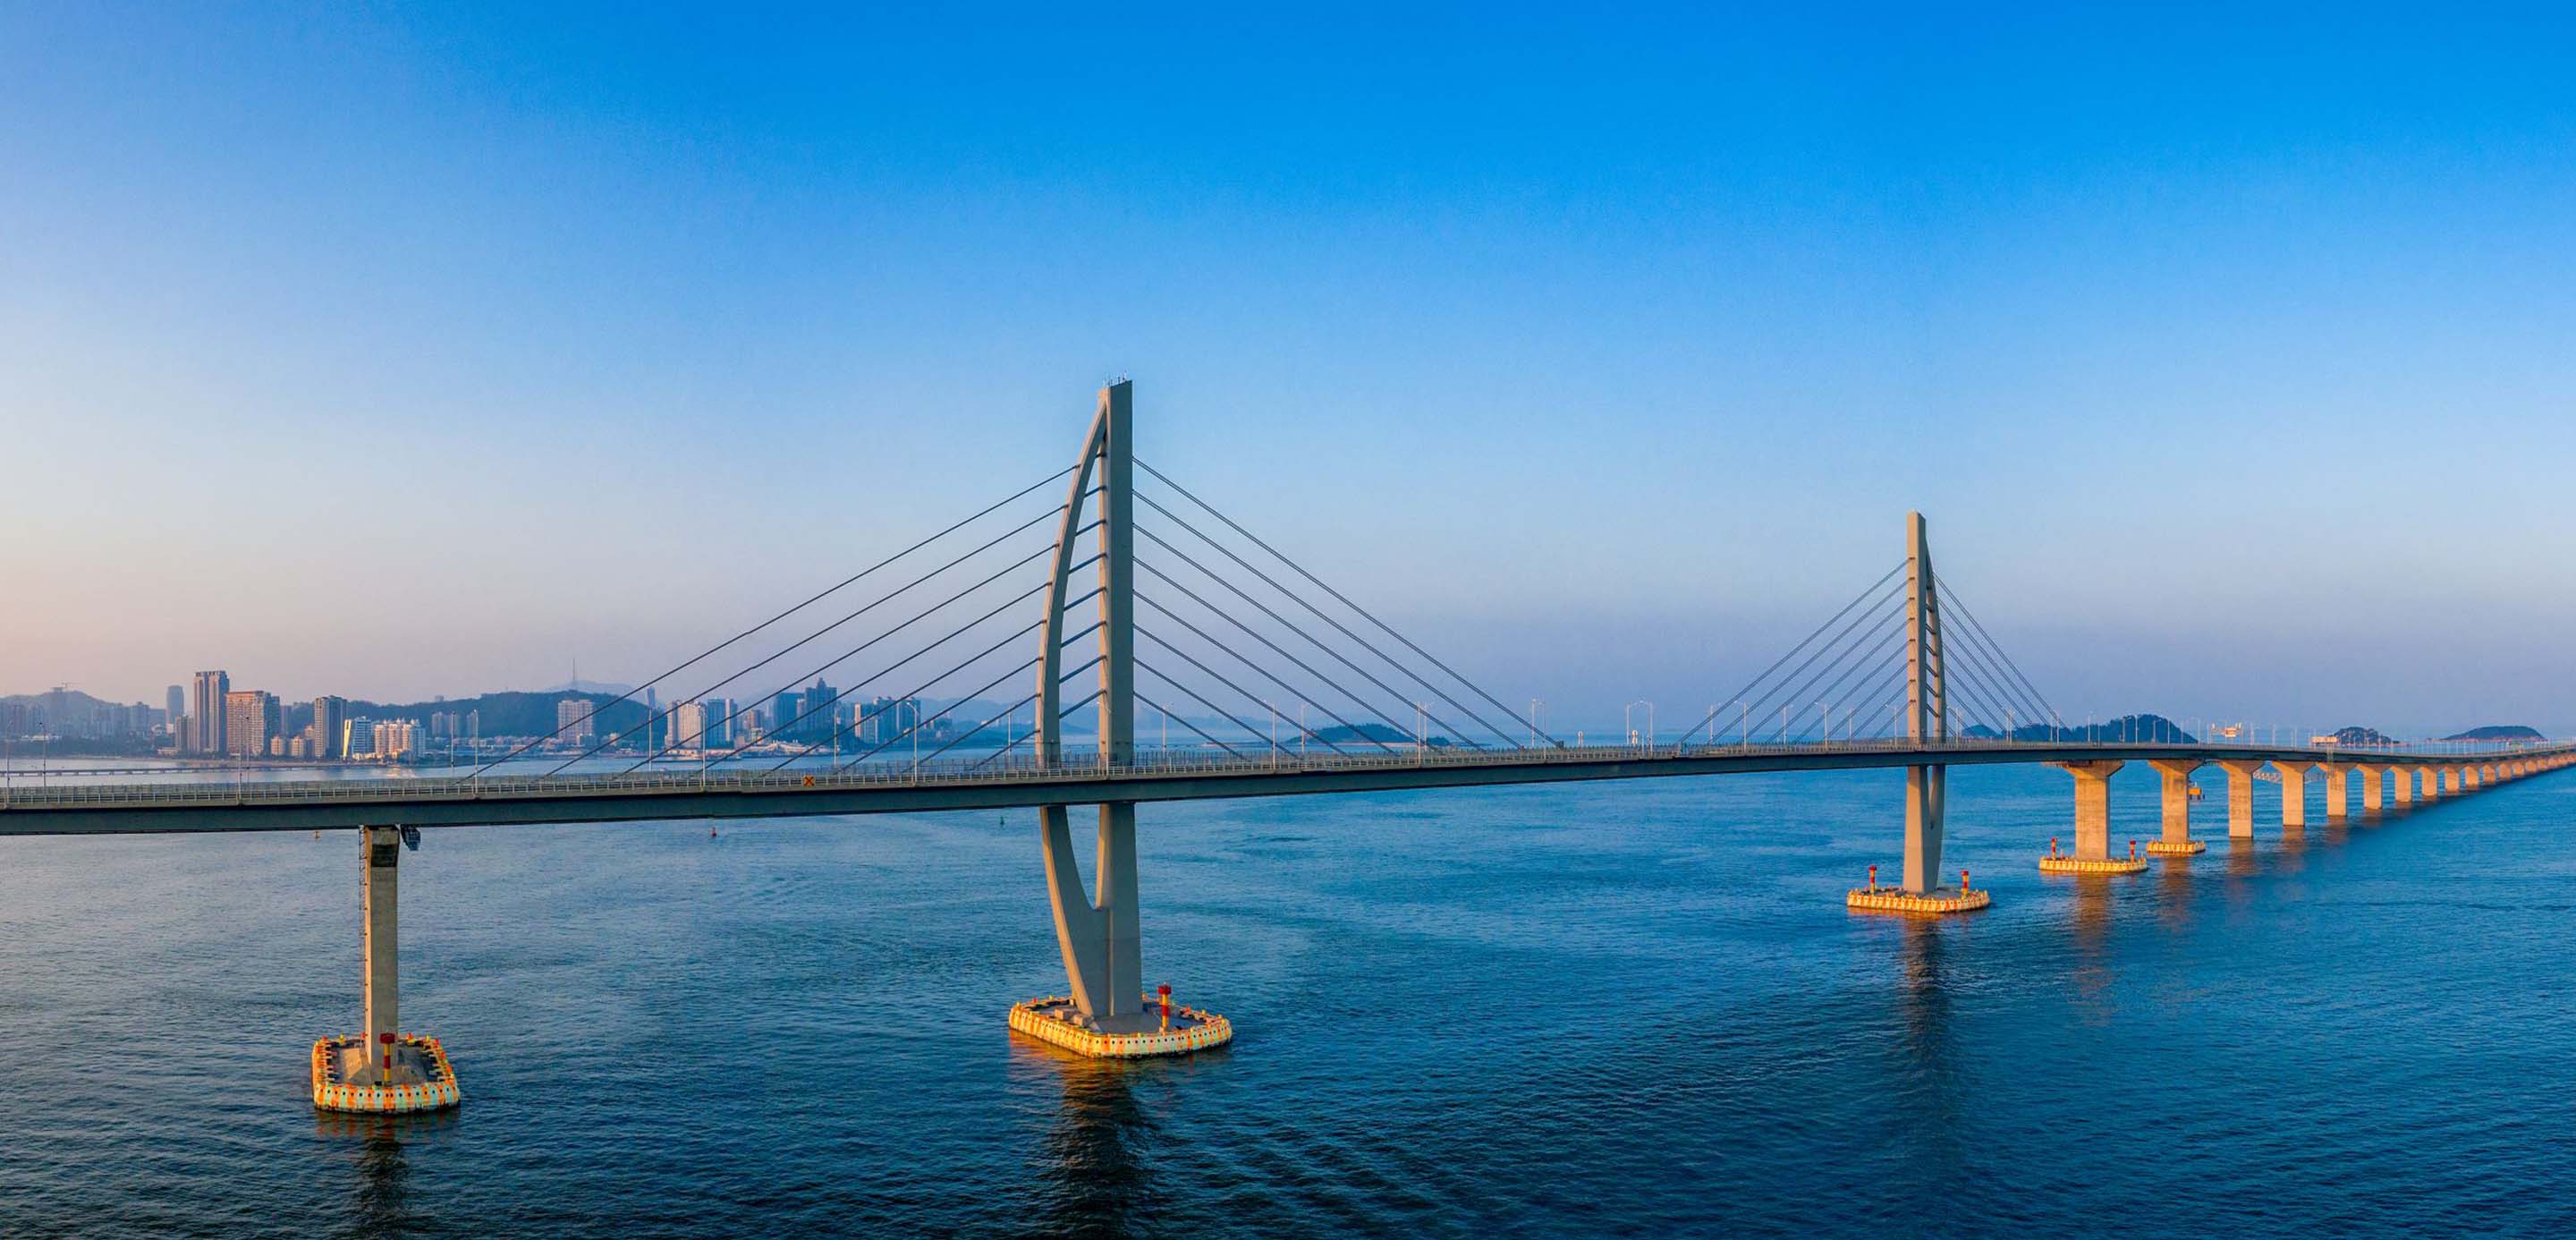 View of Hong Kong-Zhuhai-Macau bridge